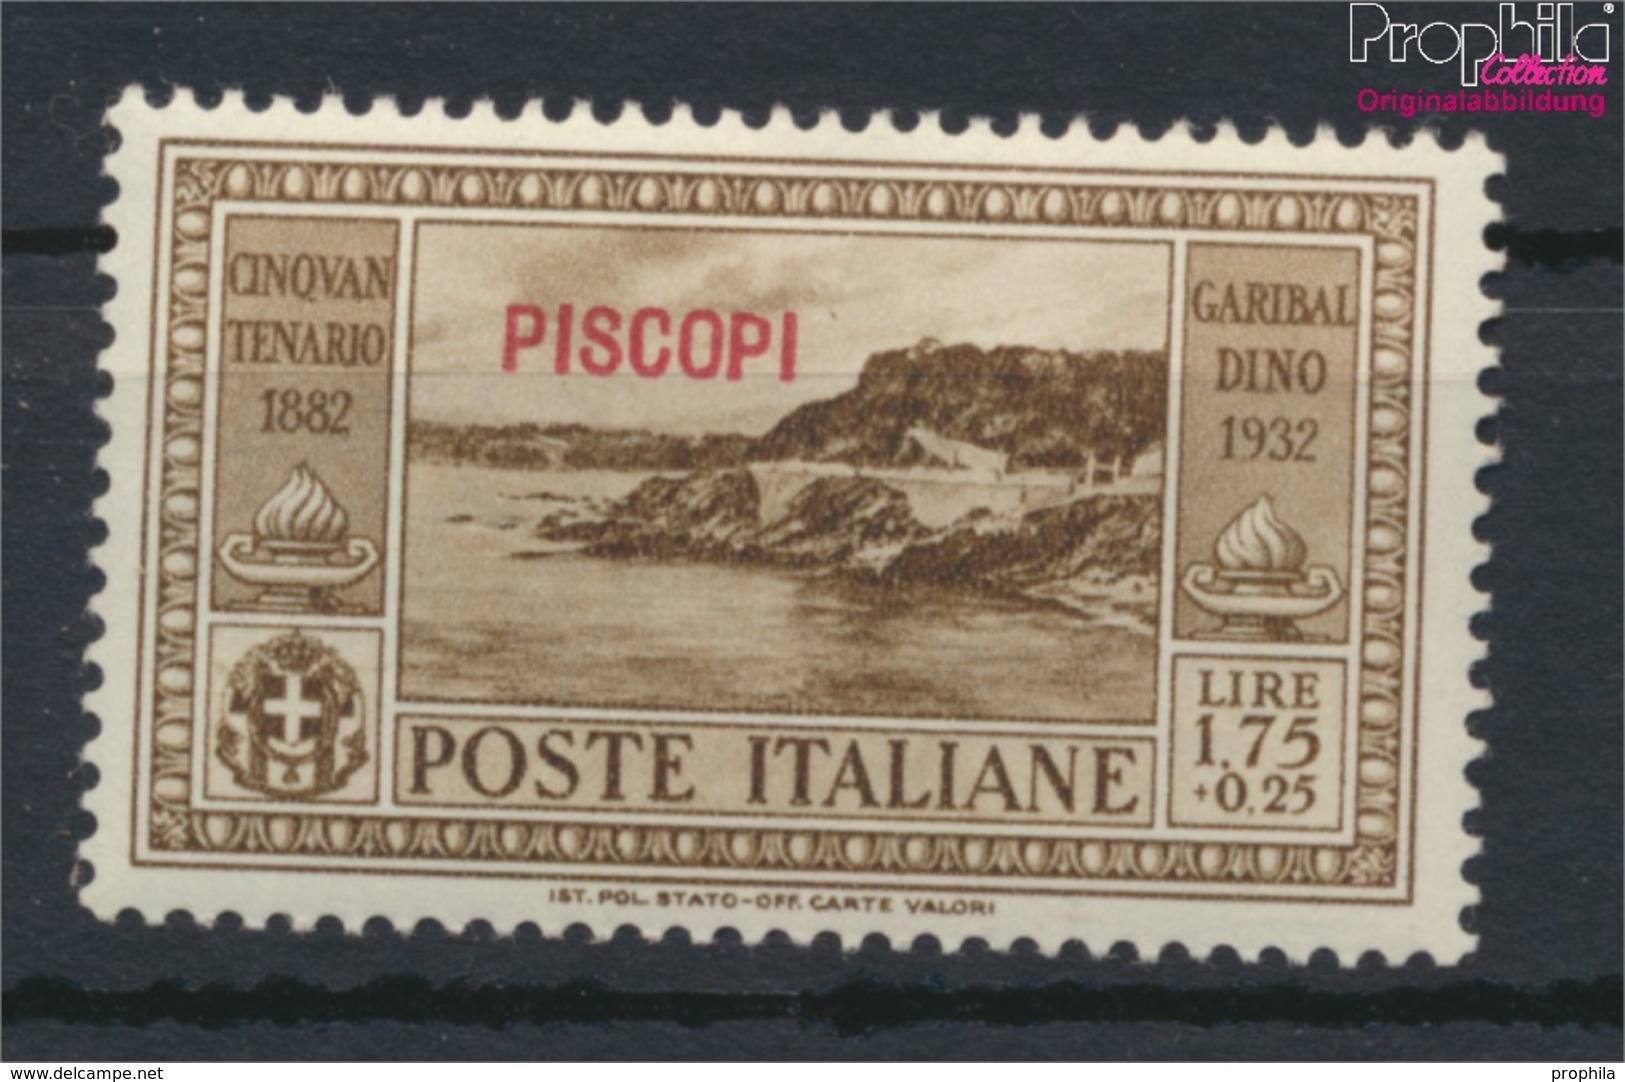 Ägäische Inseln 95IX Postfrisch 1932 Garibaldi Aufdruckausgabe Piscopi (9421778 - Aegean (Piscopi)